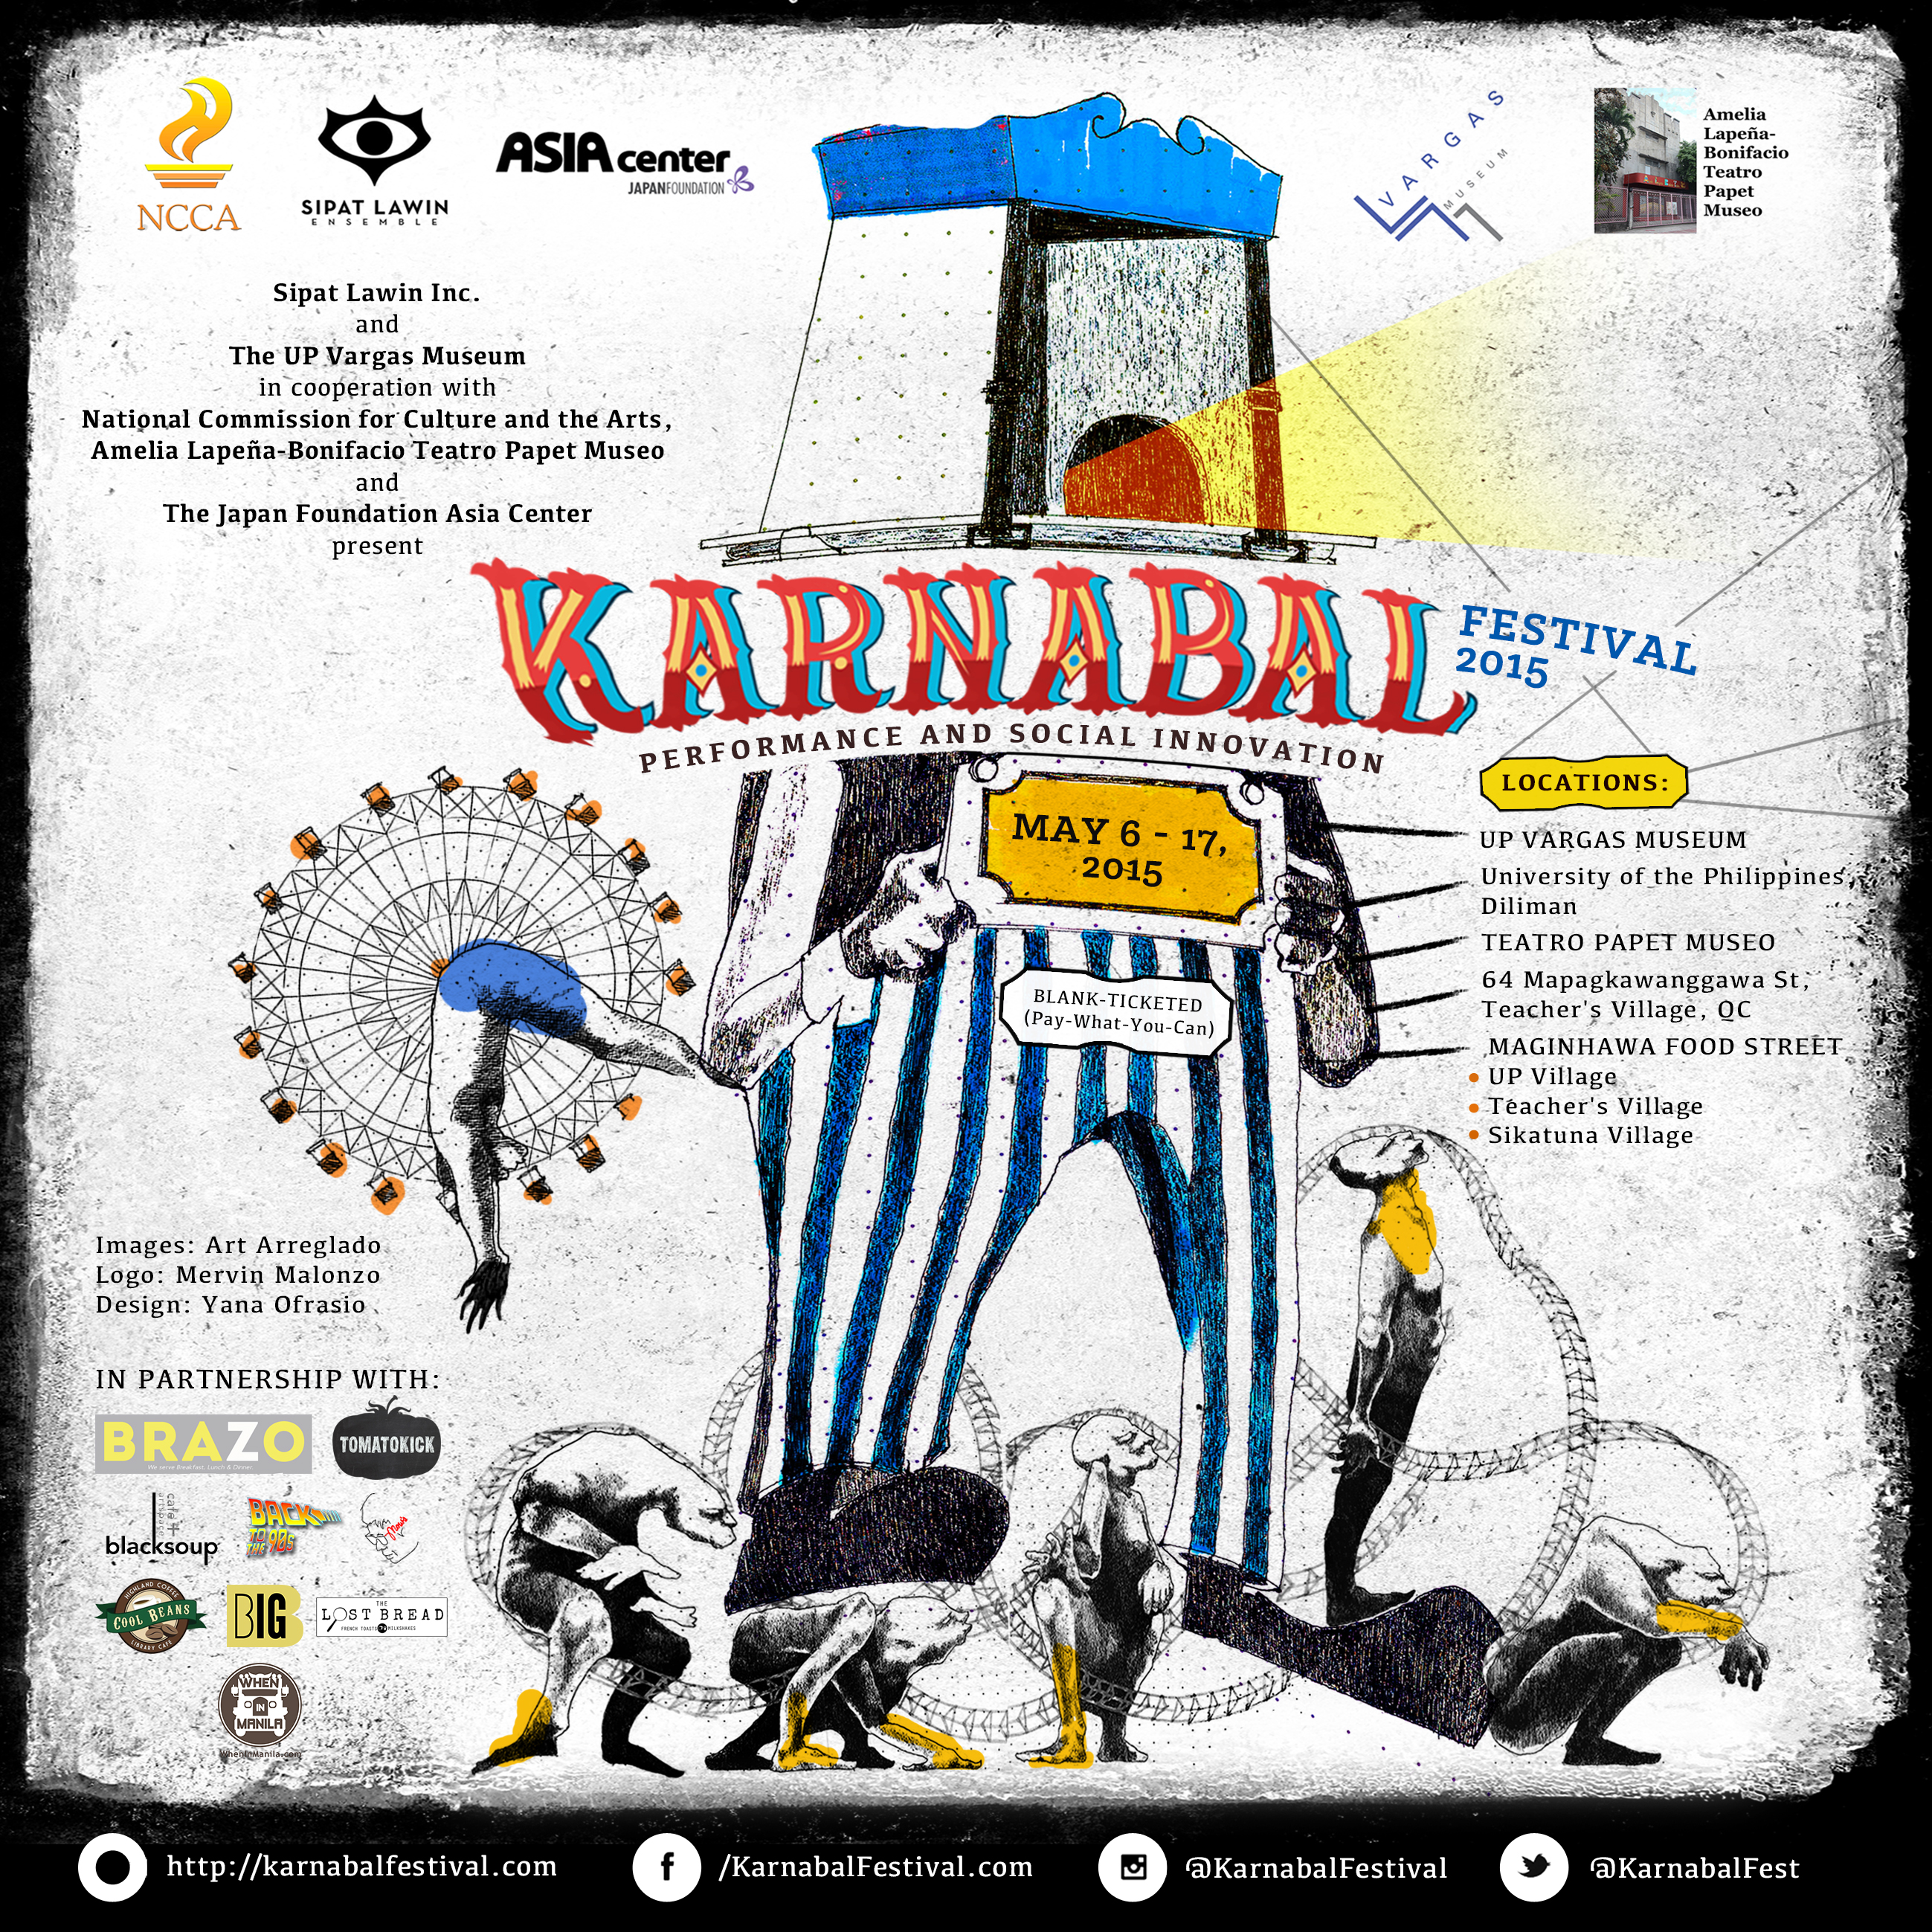 A flyer of Karnabal Festival